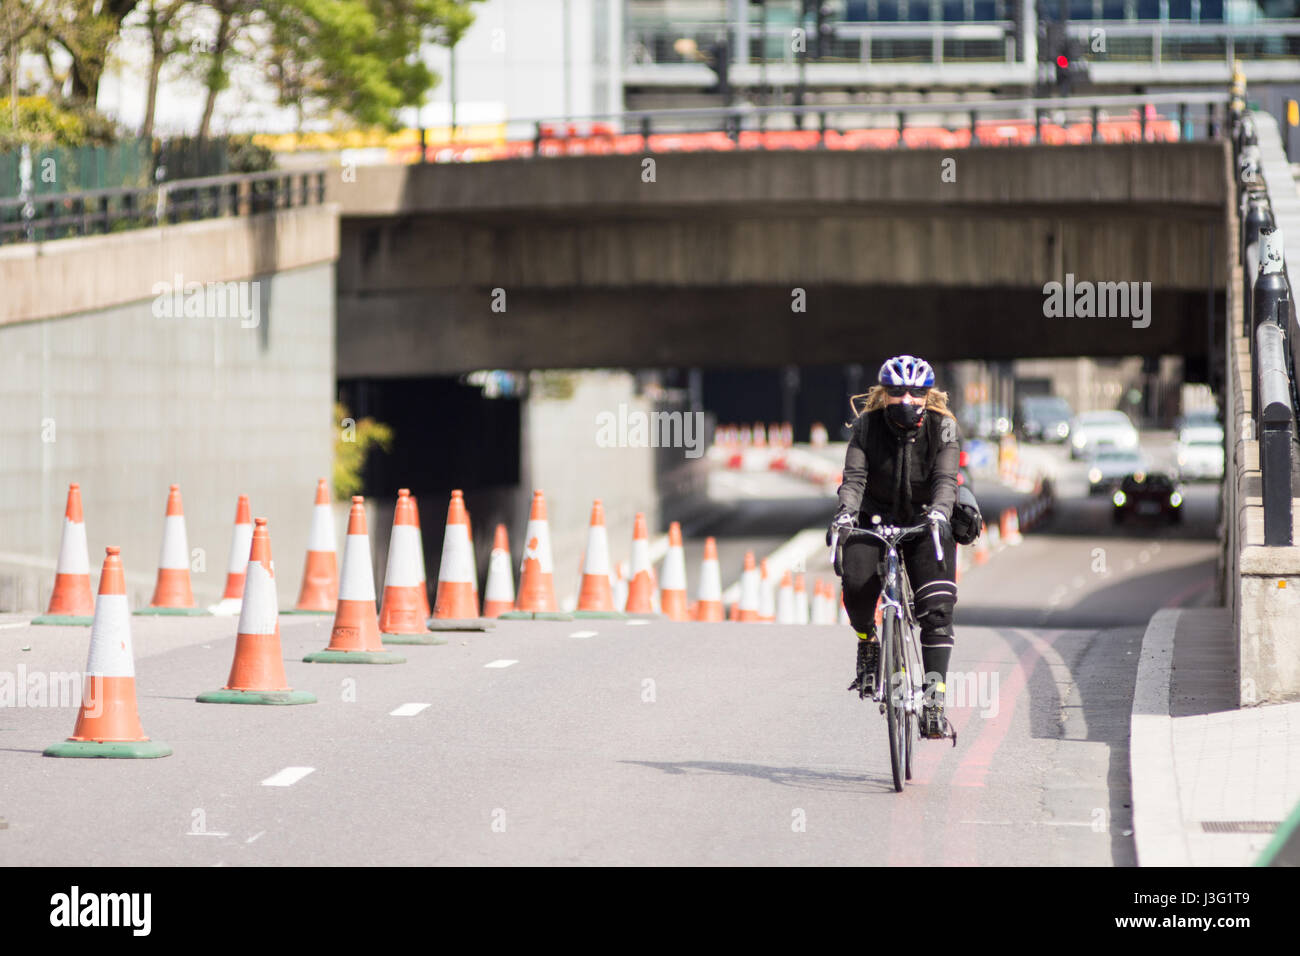 London, England - 30. April 2016: Ein Radfahrer bei Blackfriars Unterführung auf Londons Damm. Die große Kreuzung, genannt ein "Stadtautobahn" durin Stockfoto